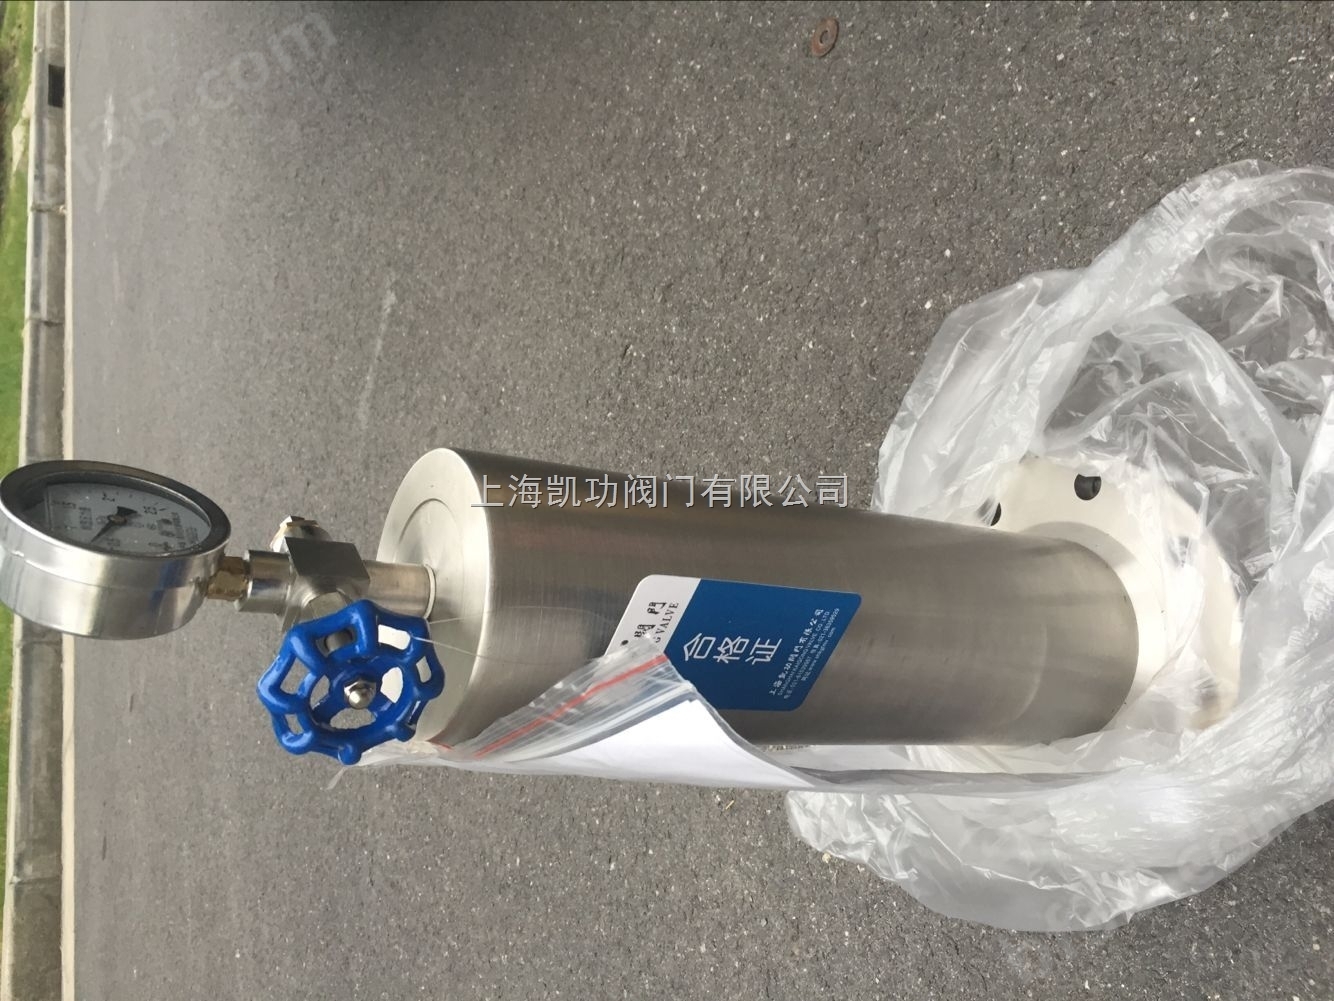 上海水锤防止器价格 水锤消除器厂家